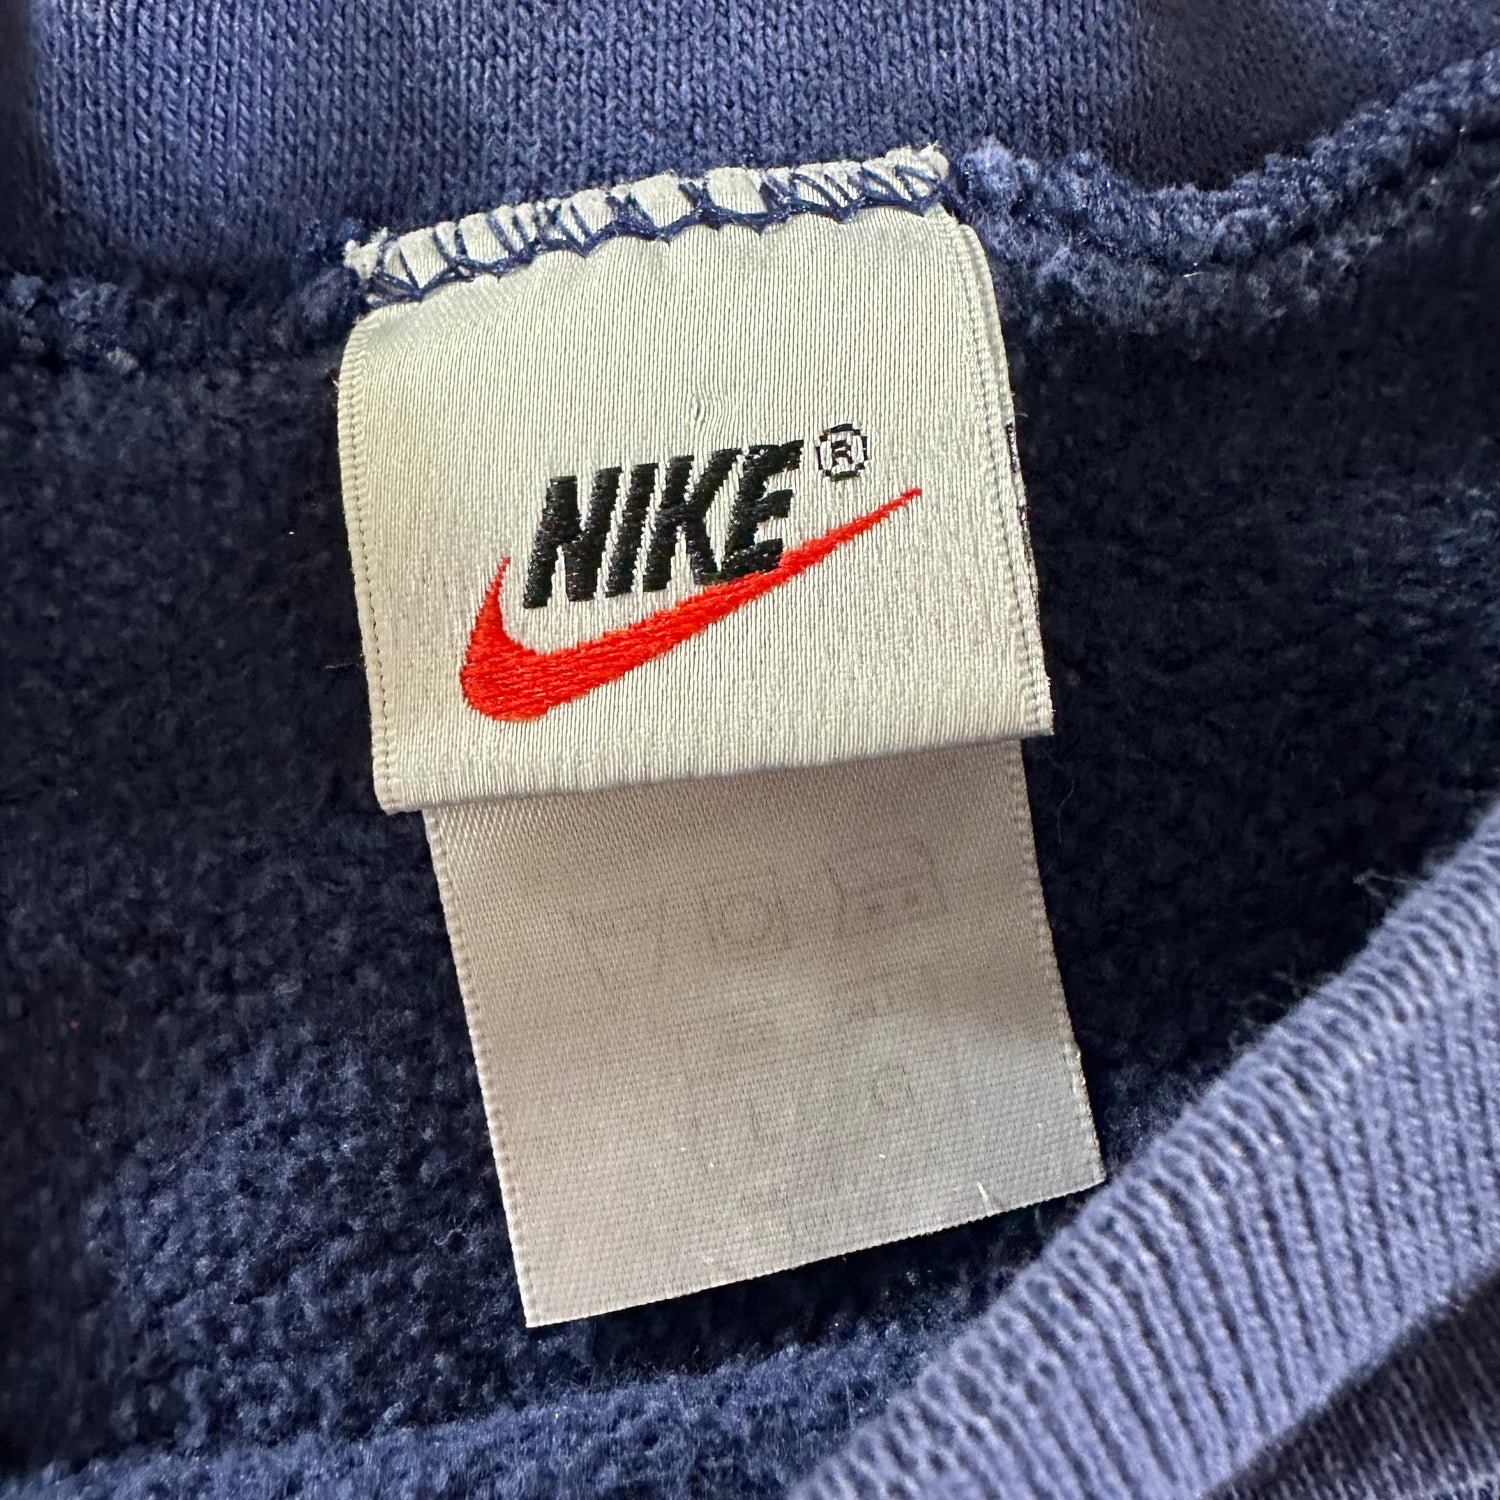 Vintage 1990s Nike Sweatshirt size Large